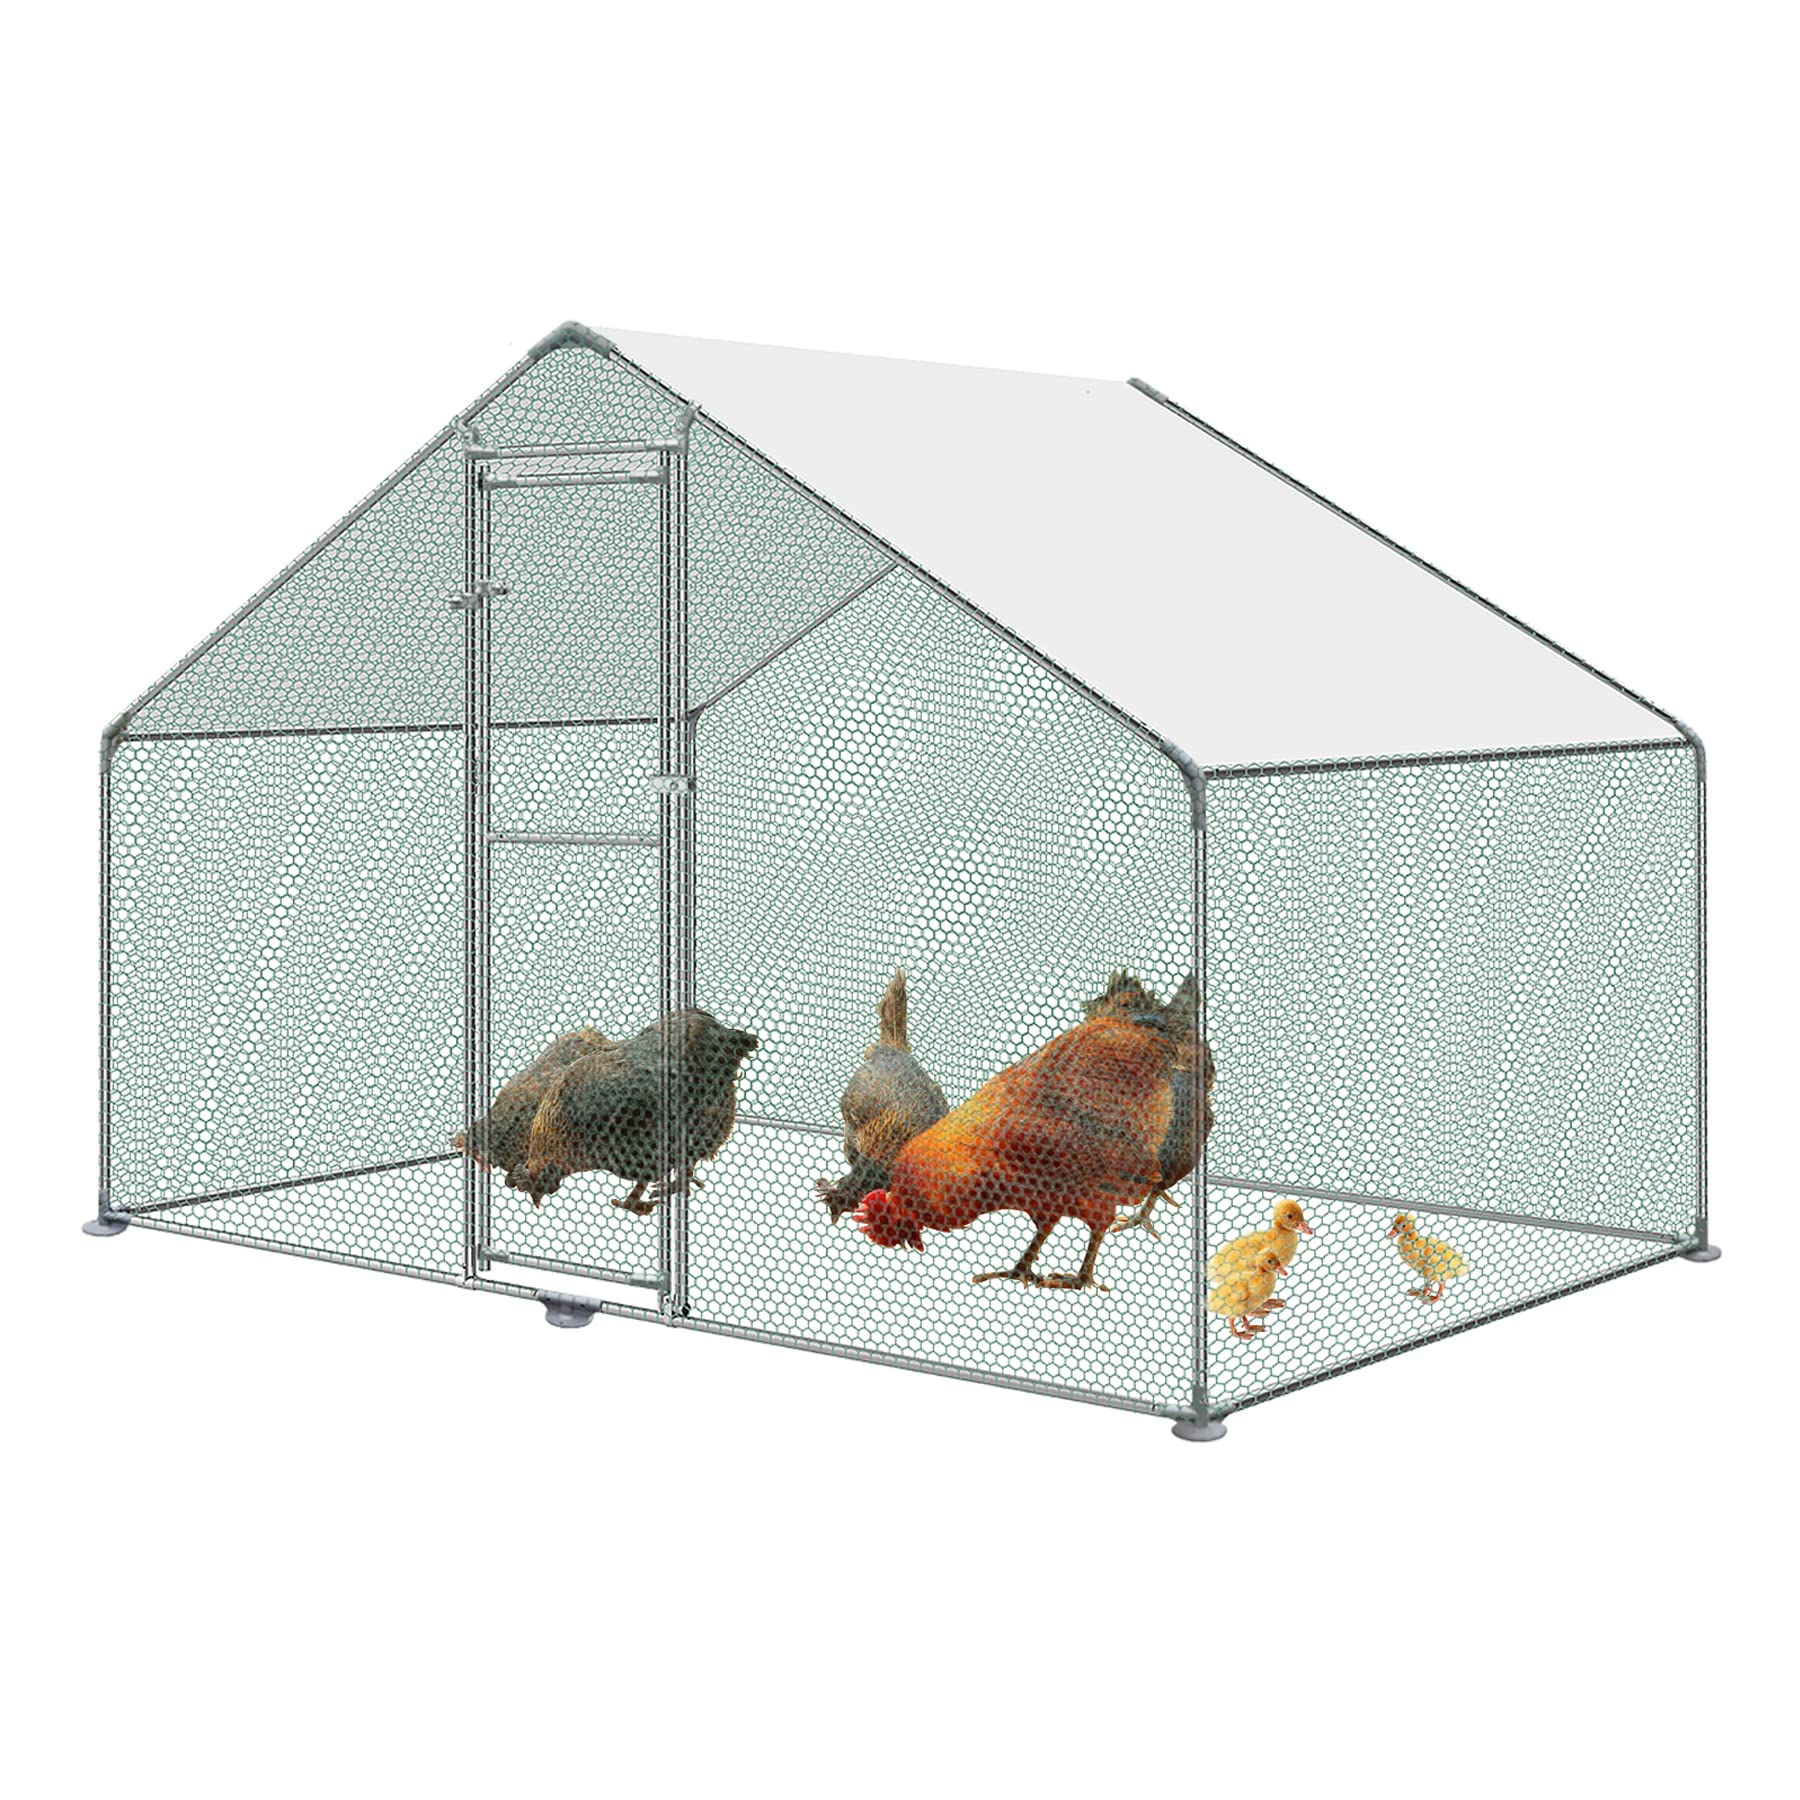 Froadp Hühnerstall Voliere Outdoor Große Freilaufgehege Hühner mit PE-Sonnenschutzhülle Hühnerkäfig Hühnergehege Freilaufgehege mit Verzinktem Stahlrahmen für Kaninchen Hühner Geflügelzucht (3x2x2m)